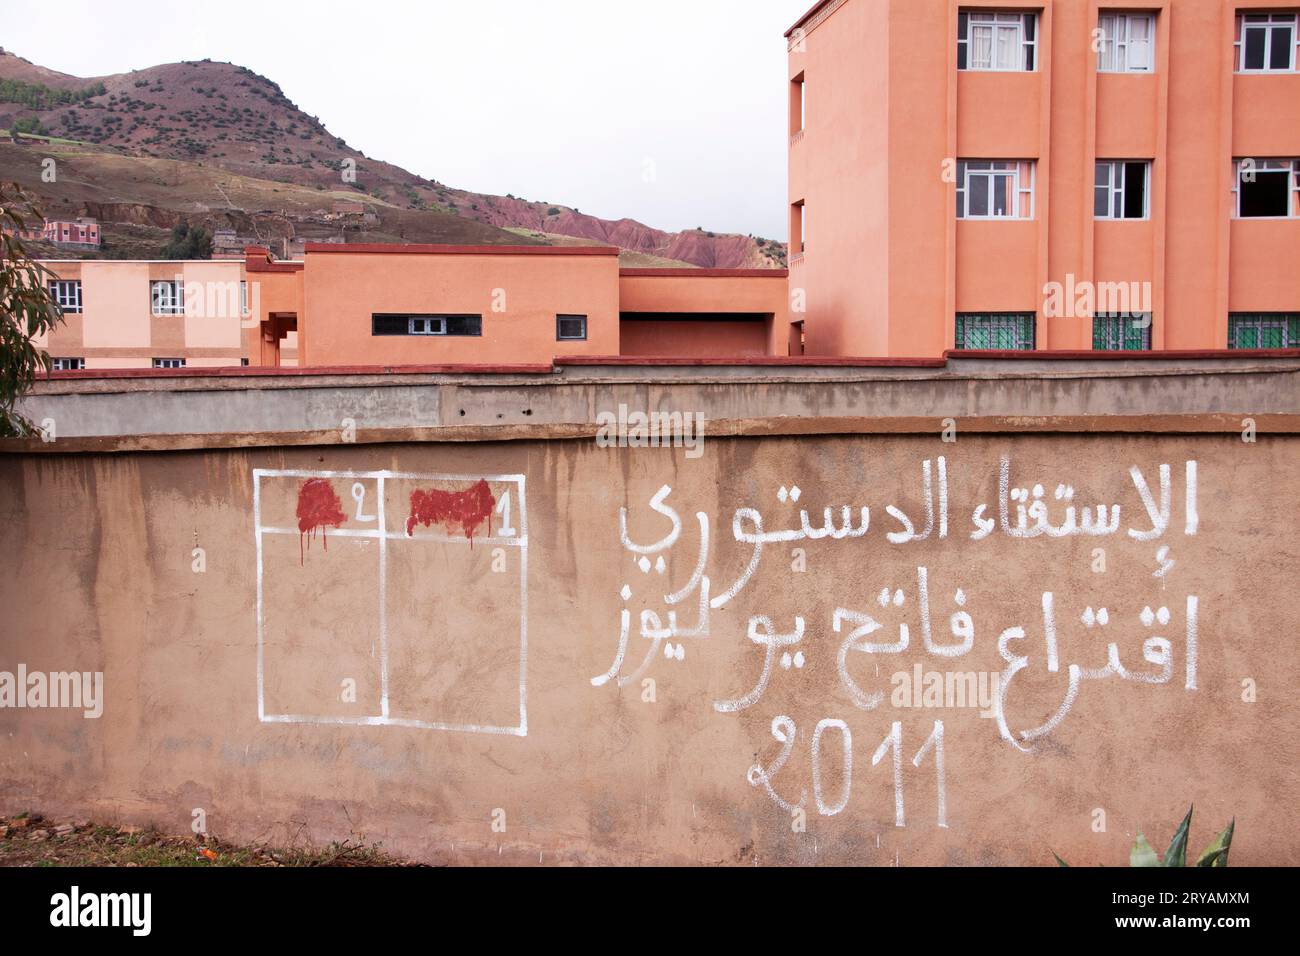 Bâtiment dans la montagne berbère Maroc Mars 2012 Banque D'Images